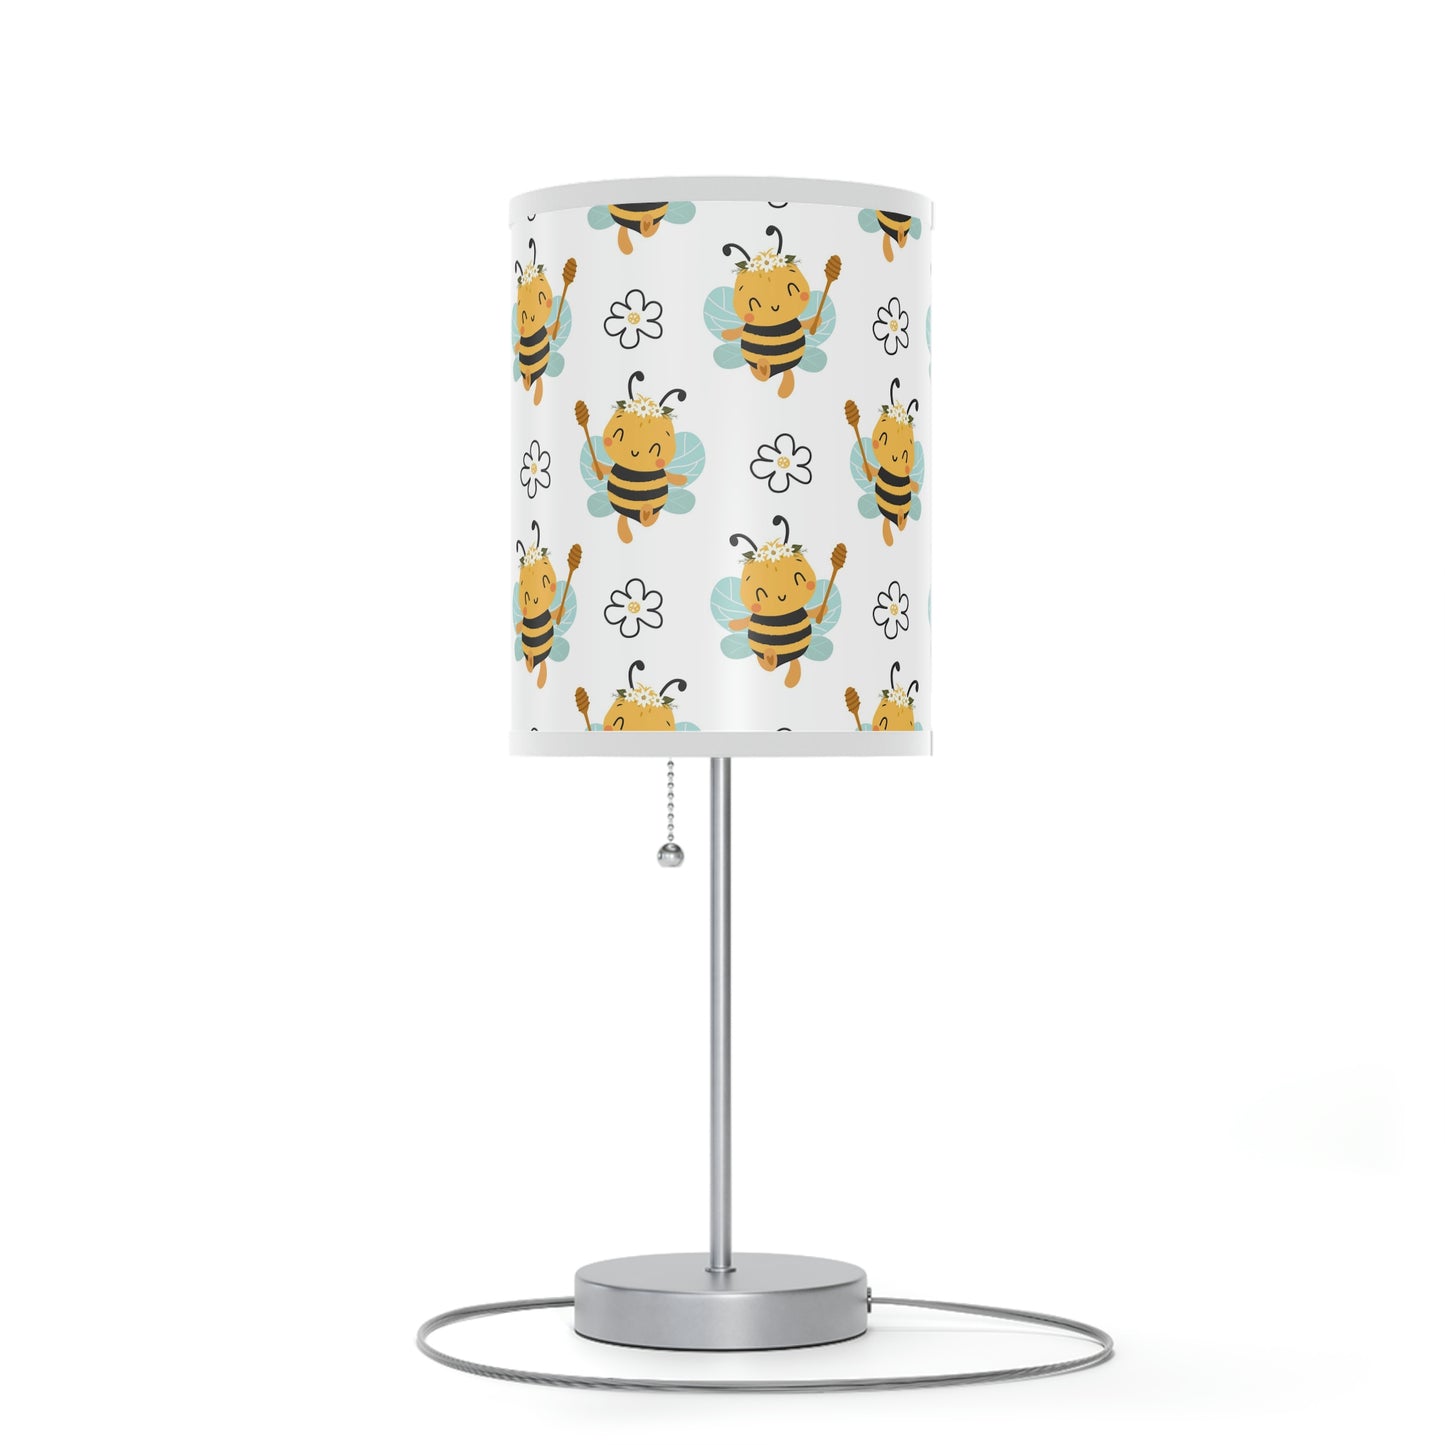 Adorable Honeybee Baby Nursery Lamp - Honeybee Nursery Table Lamp